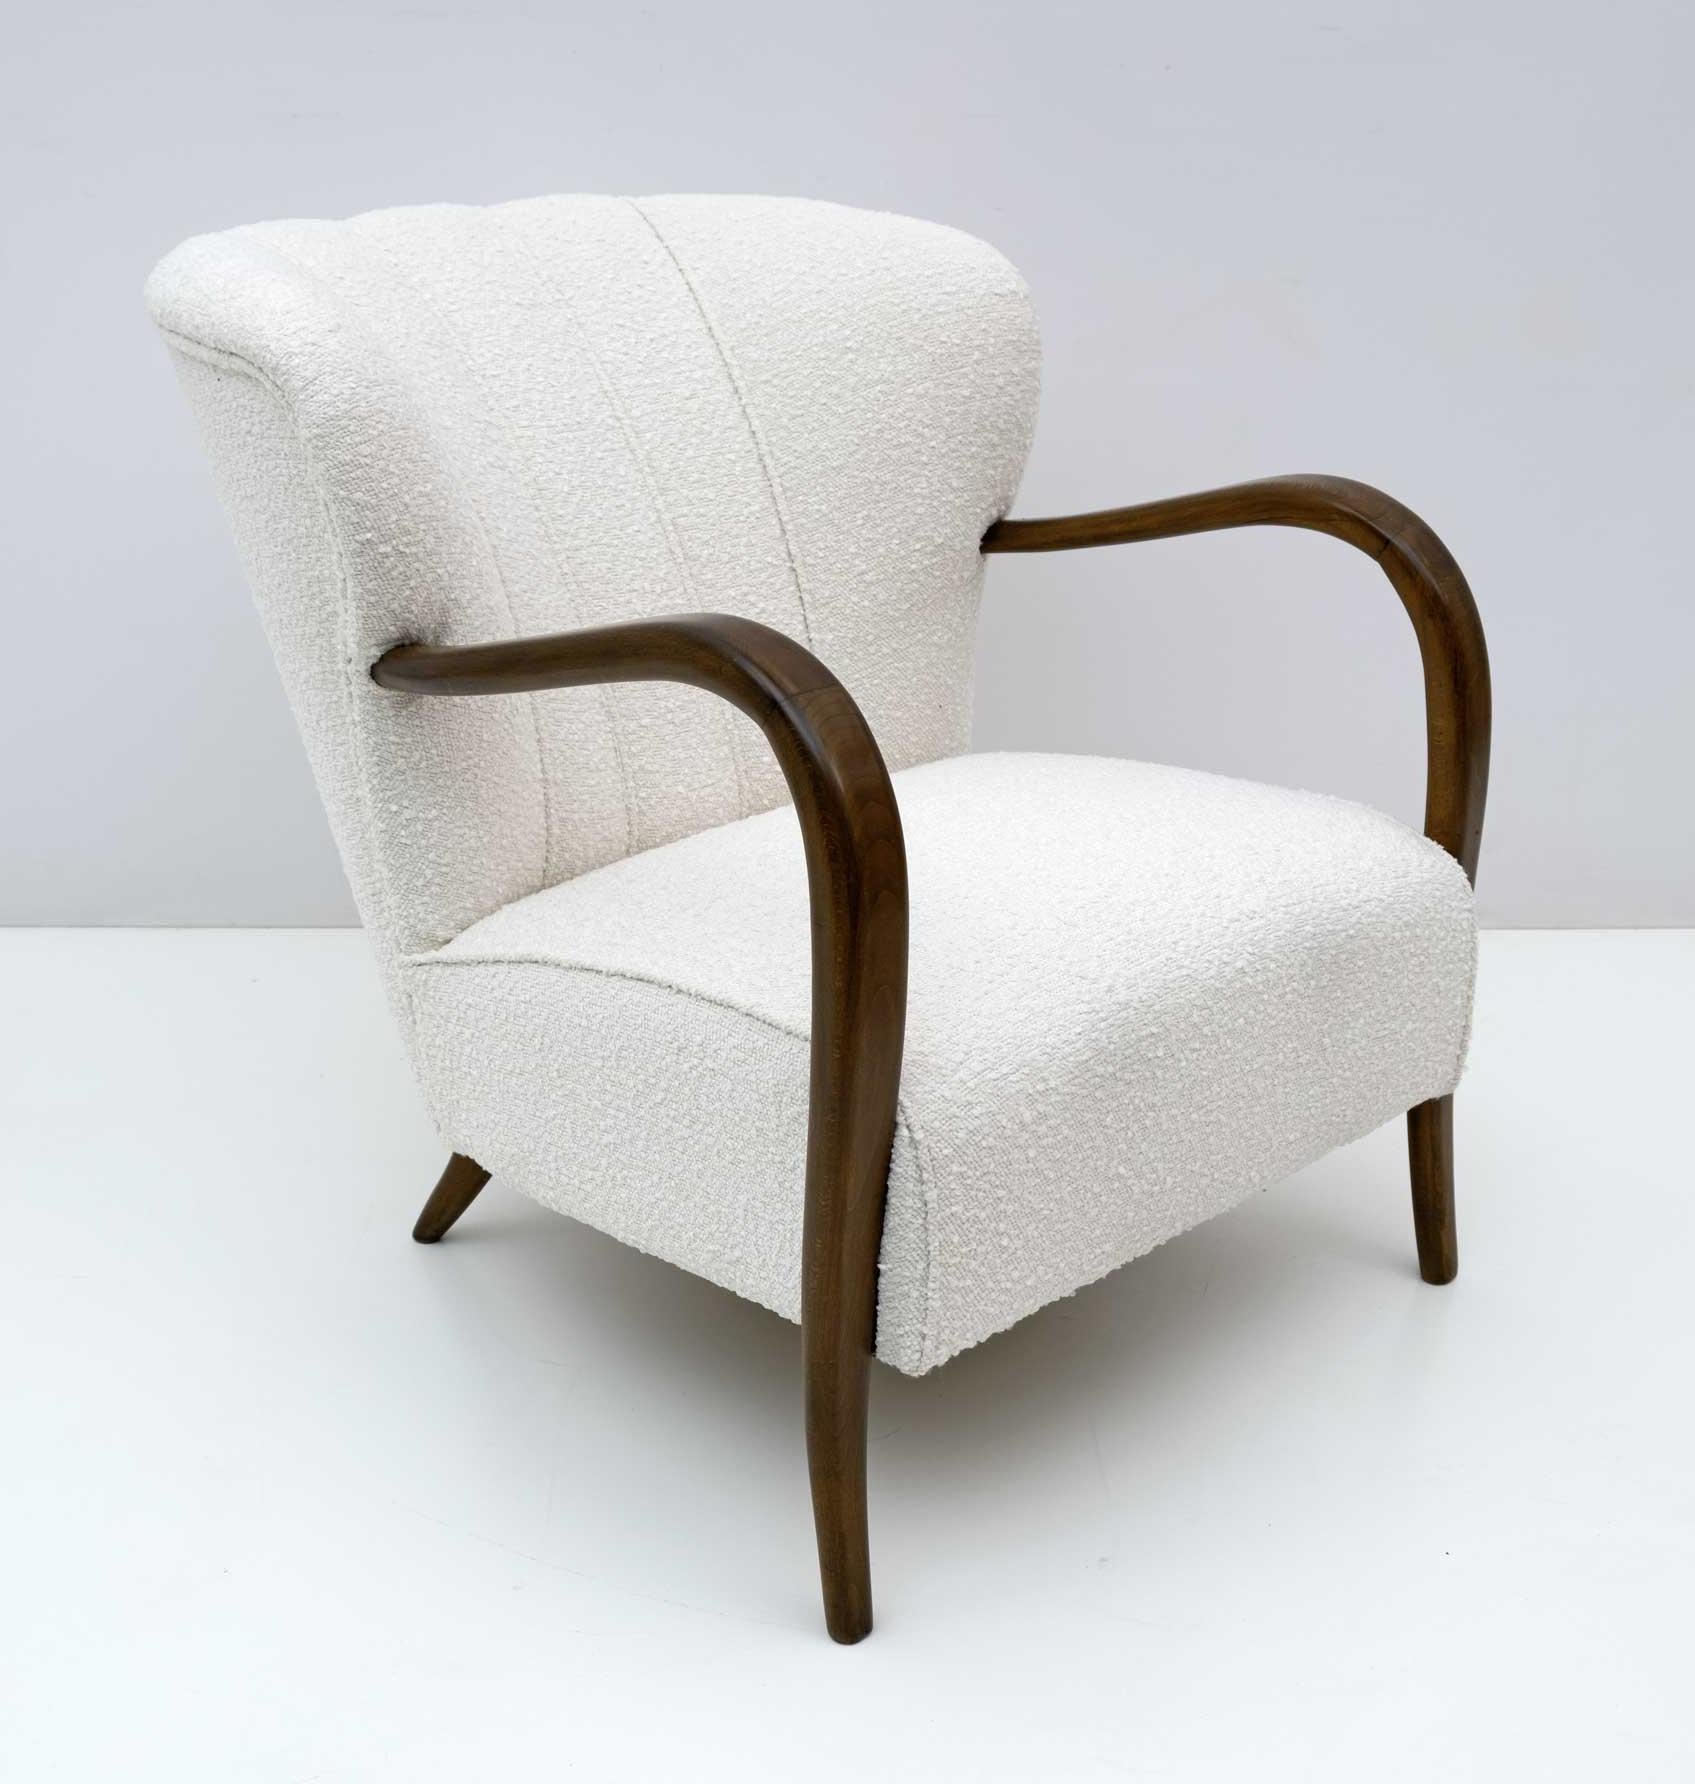 Confortable fauteuil de la période Art Deco, aux courbes arrondies de grand design, entièrement restauré et tapissé de tissu bouclé ivoire clair. Cette chaise longue trouverait parfaitement sa place dans un salon ainsi que dans le coin d'une chambre